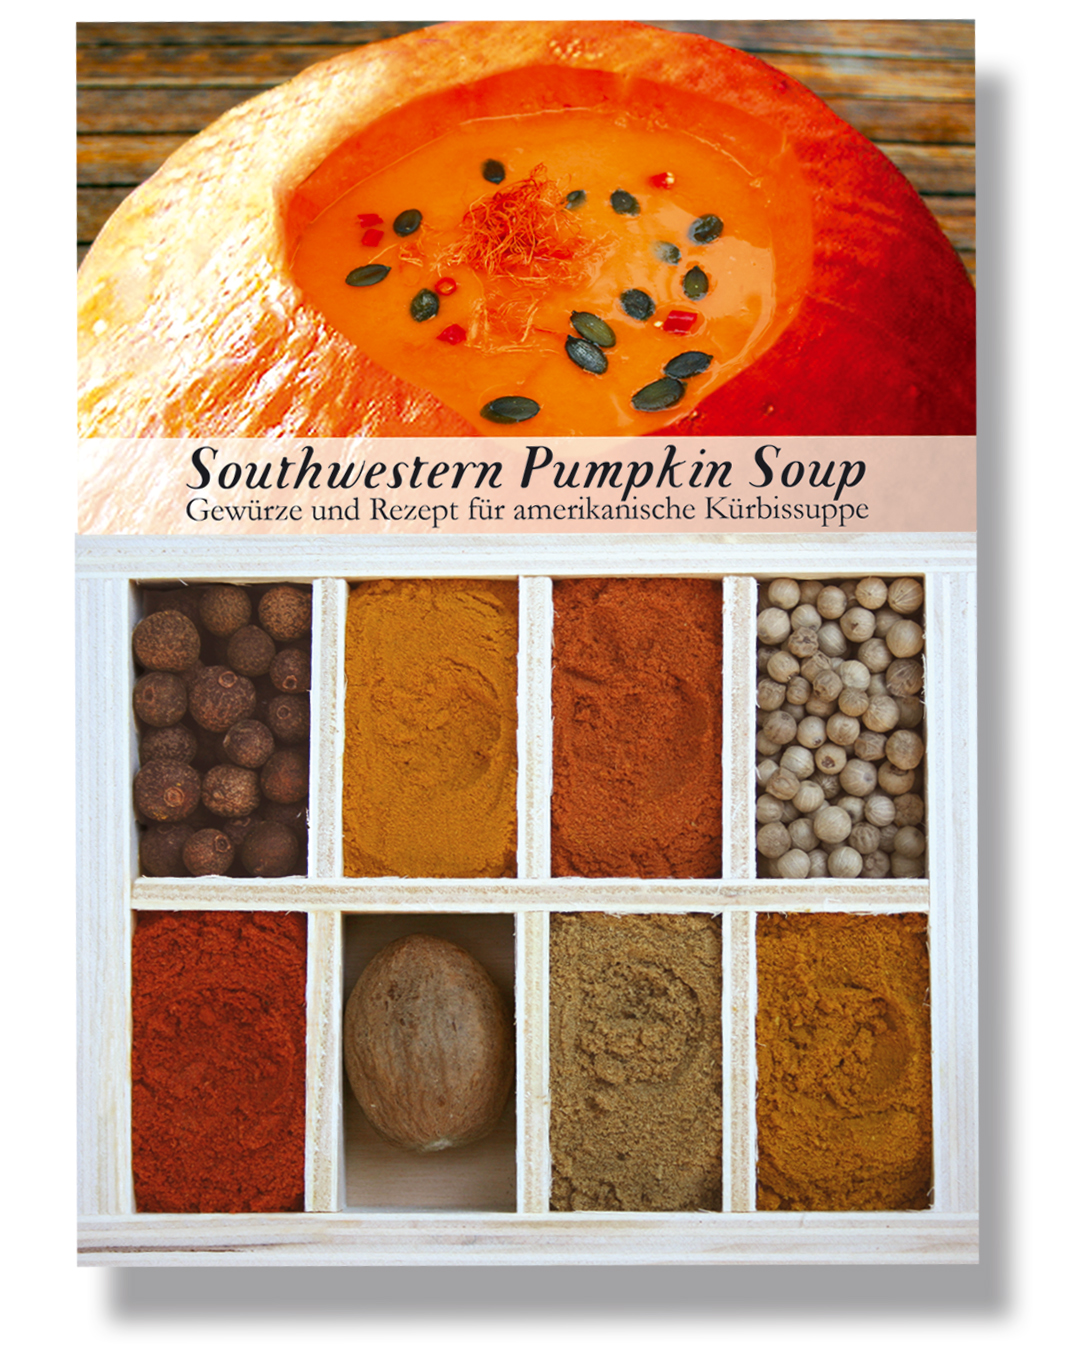 Southwestern Pumpkin Soup-Gewürzkasten